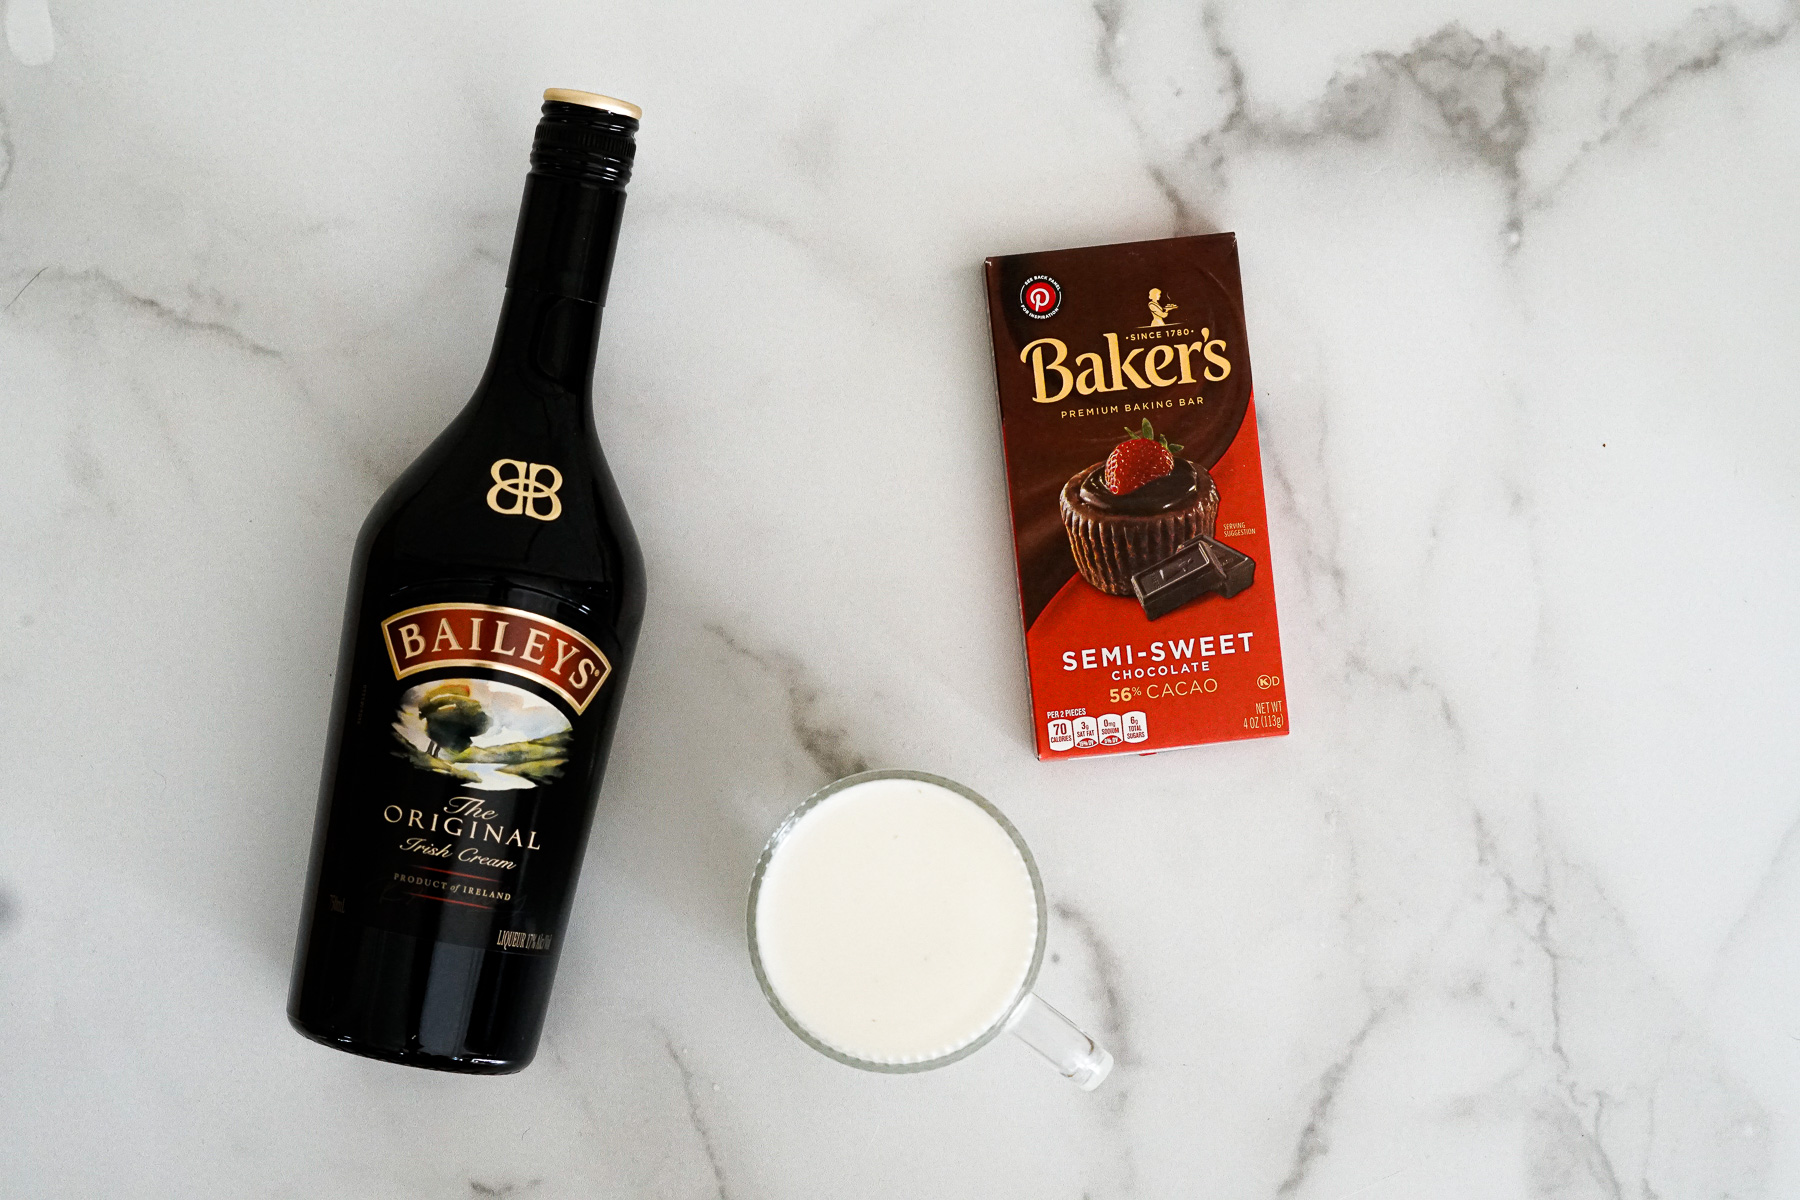 Bailey's Irish Cream, Semisweet chocolate and milk - ingredients for Bailey's Irish Cream Hot Chocolate.